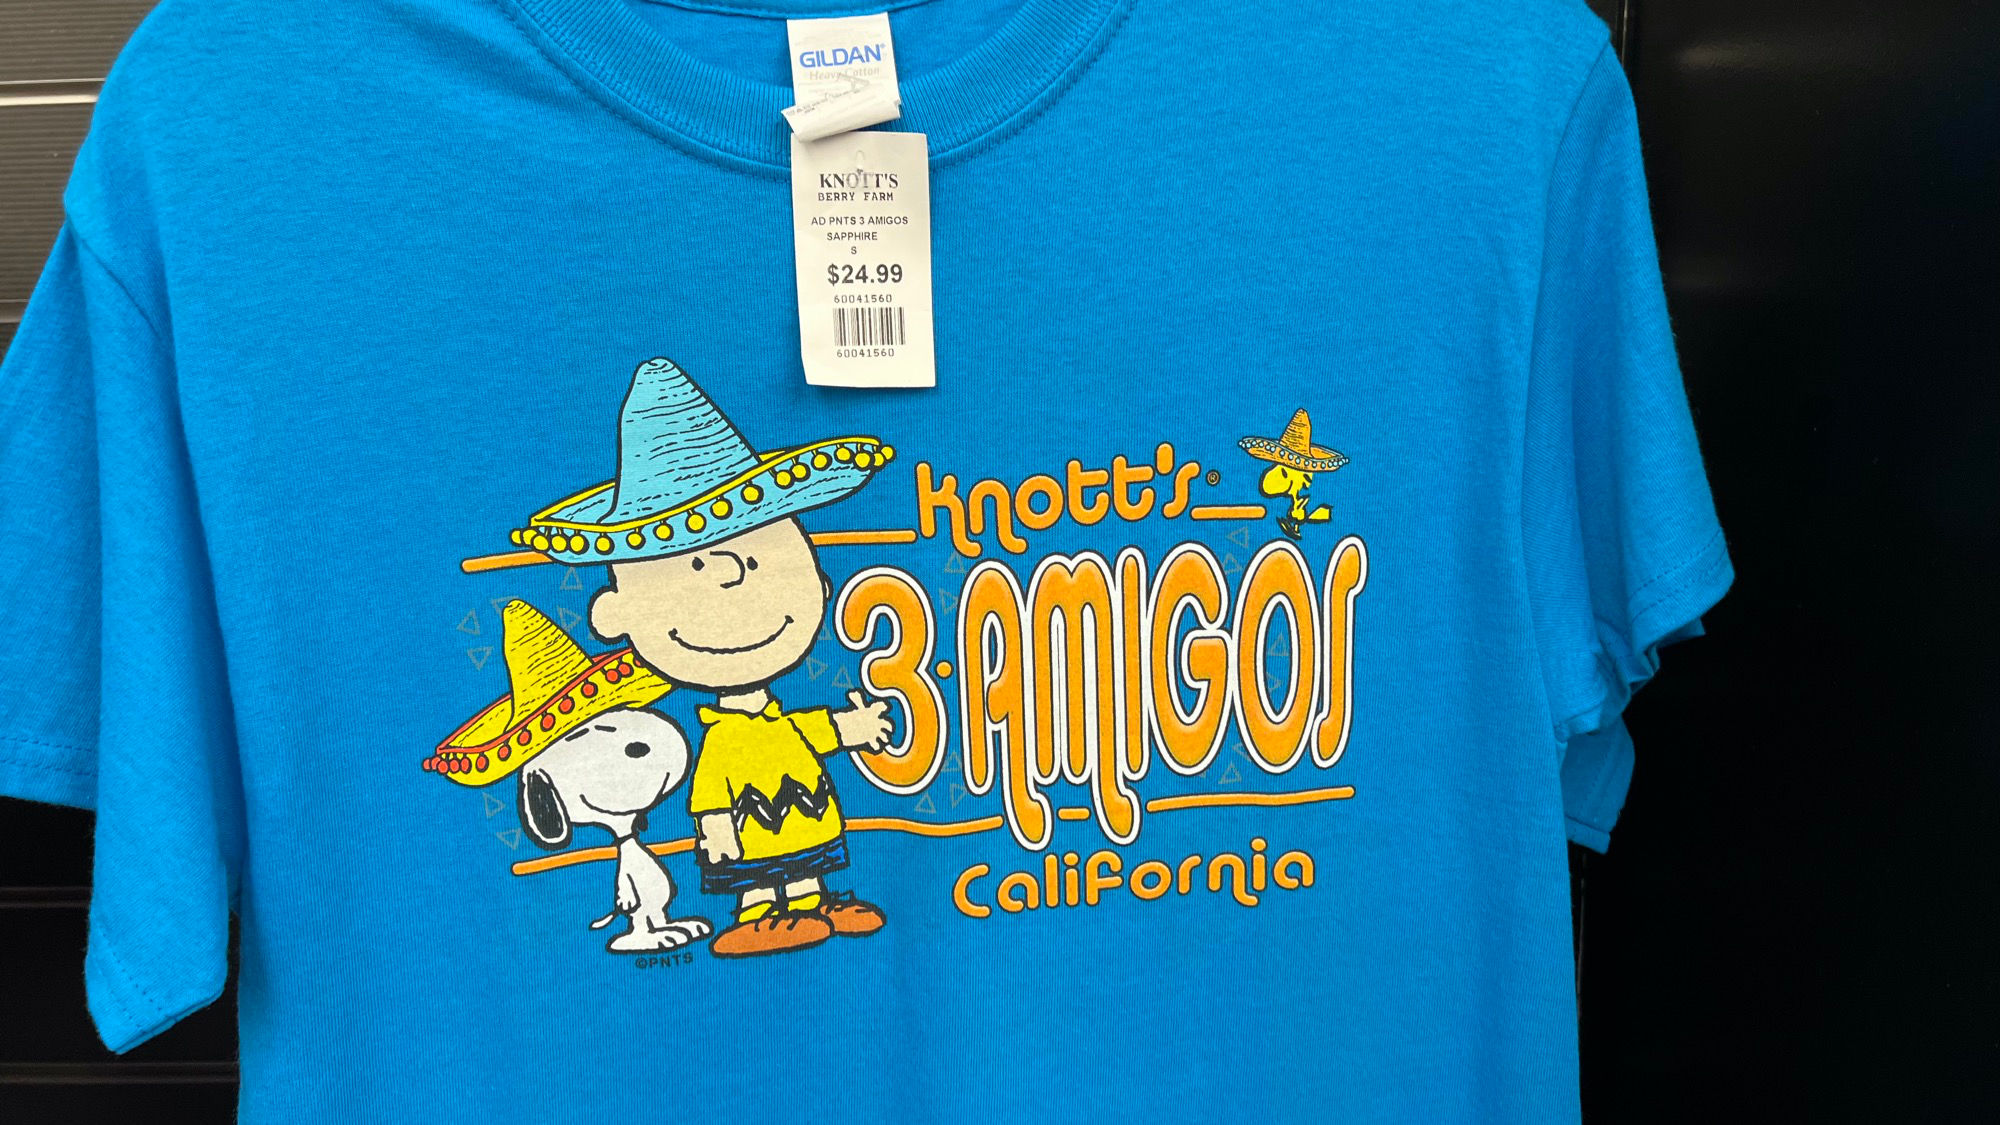 Virginia's Gift Shop 3-Amigos Shirt